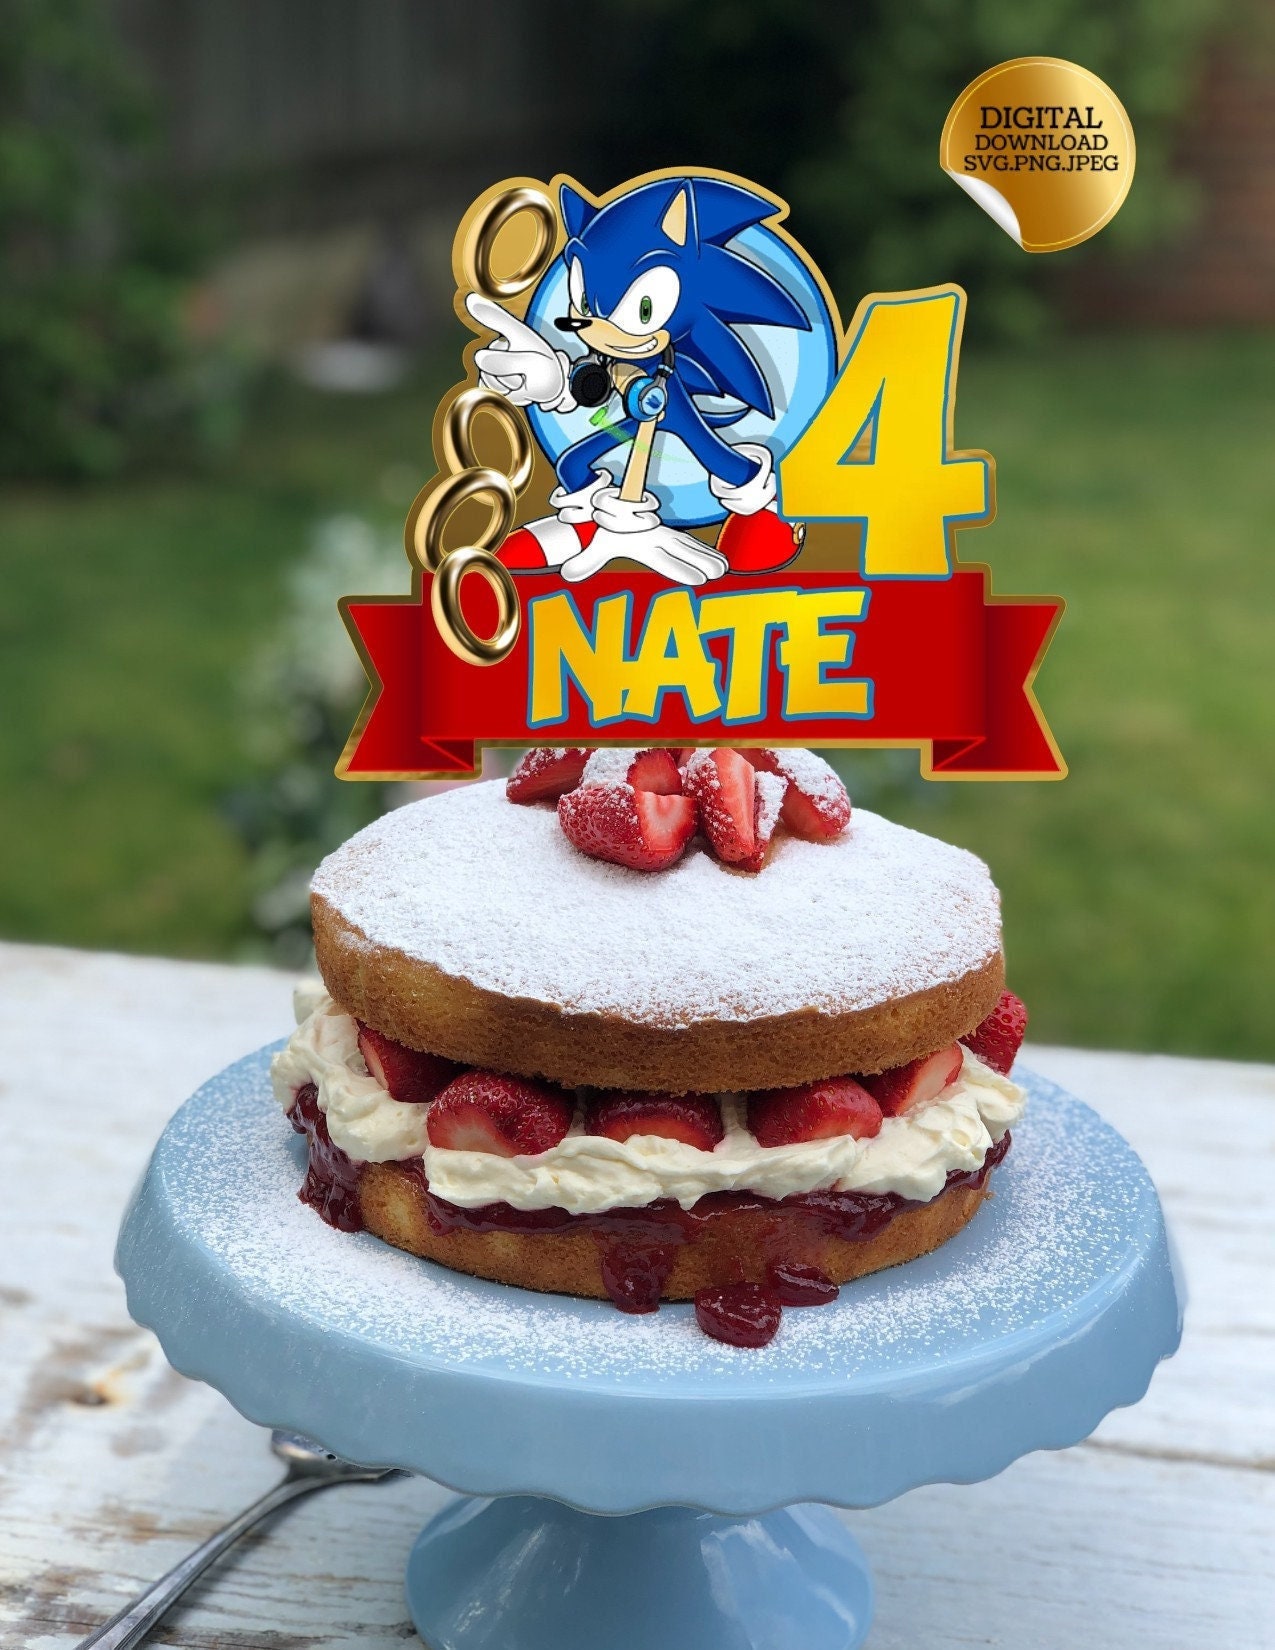 Shaker Cake Topper Sonic / Sonic Cake Topper / Sonic the Hedgehog Cake  Topper / Sonic Party Decoration / Sonic Topper / 3D Cake Topper 